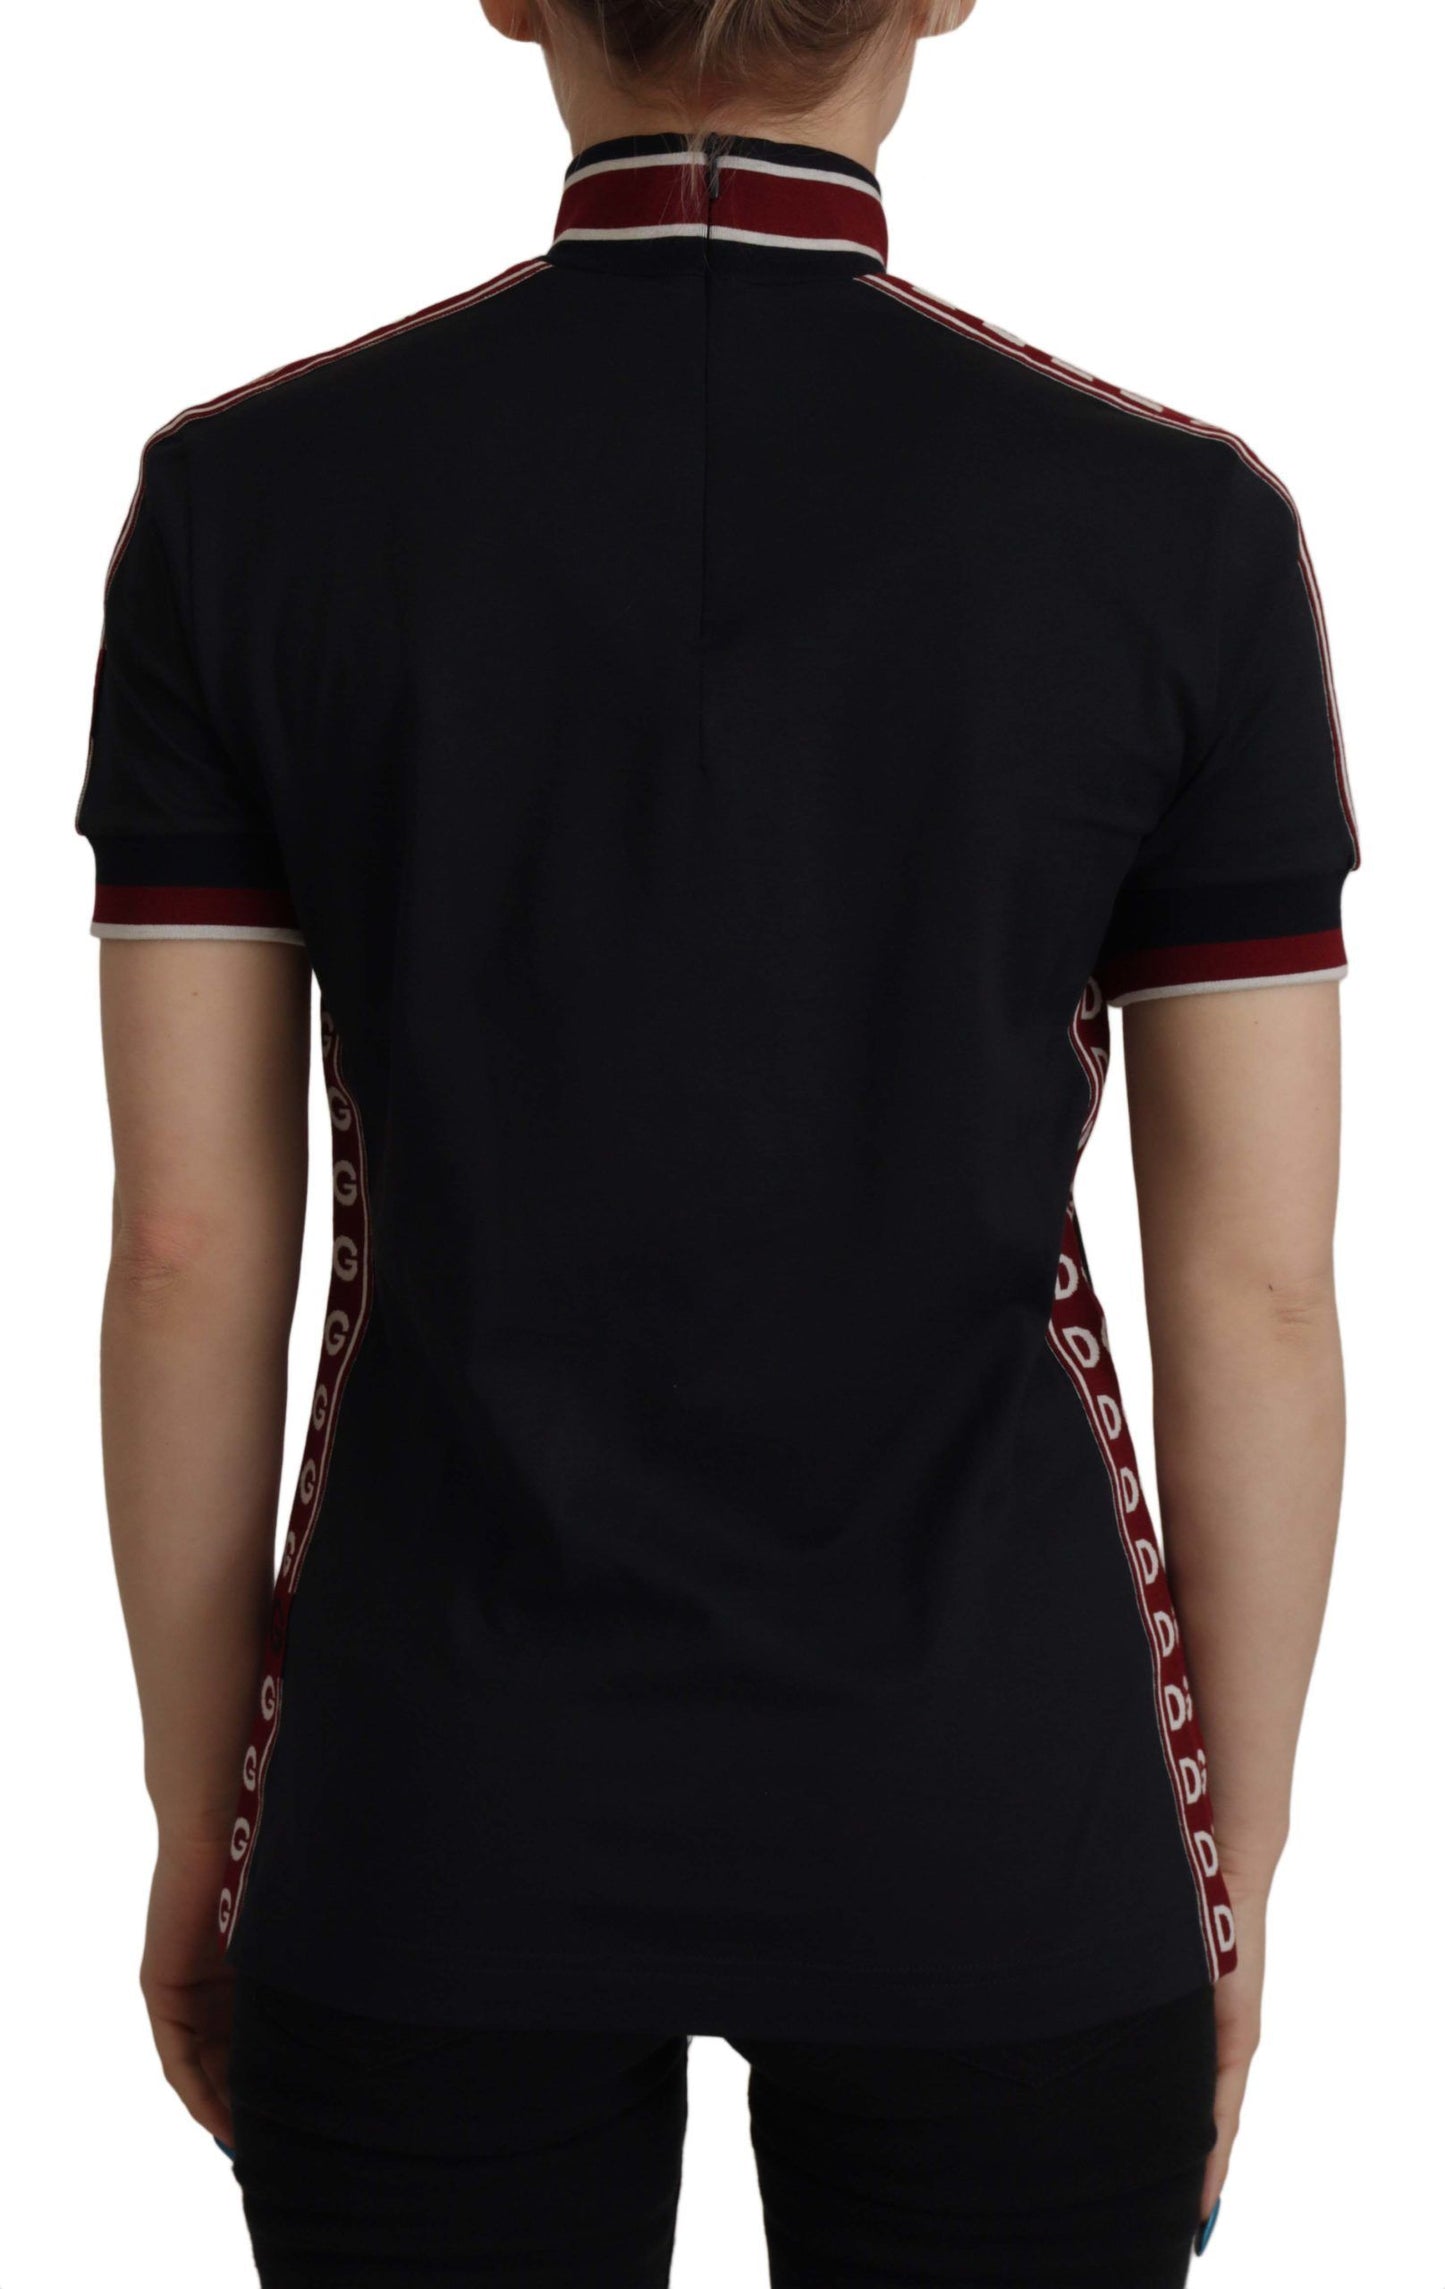 Dolce & Gabbana Black #DGMillennials 100% Cotton T-shirt